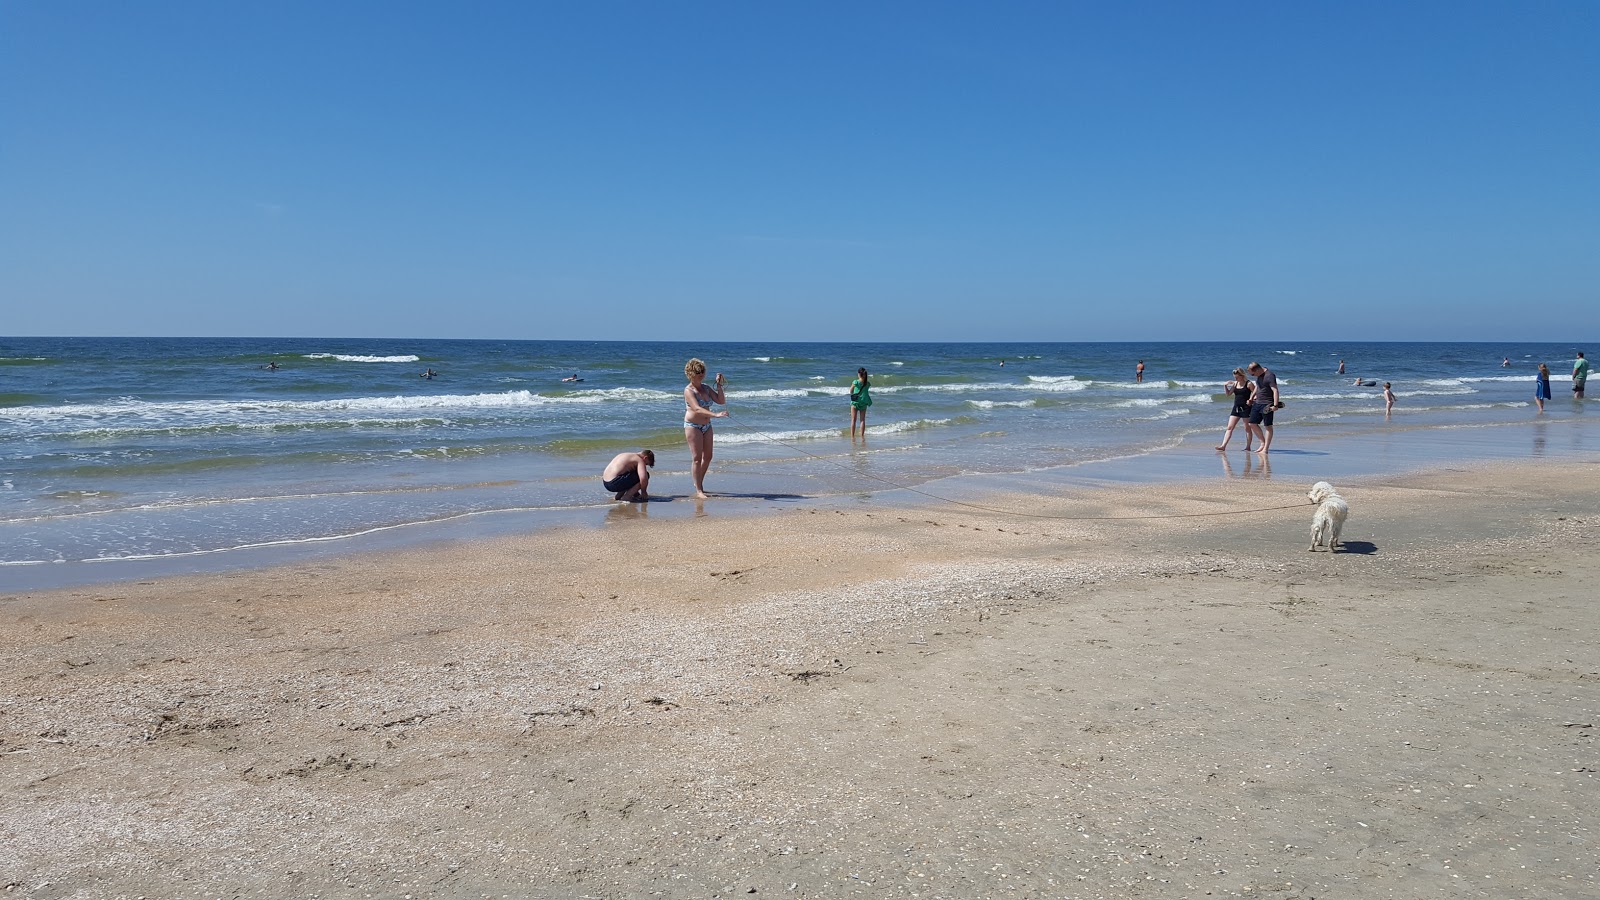 Romo Car Plajı'in fotoğrafı parlak kum yüzey ile